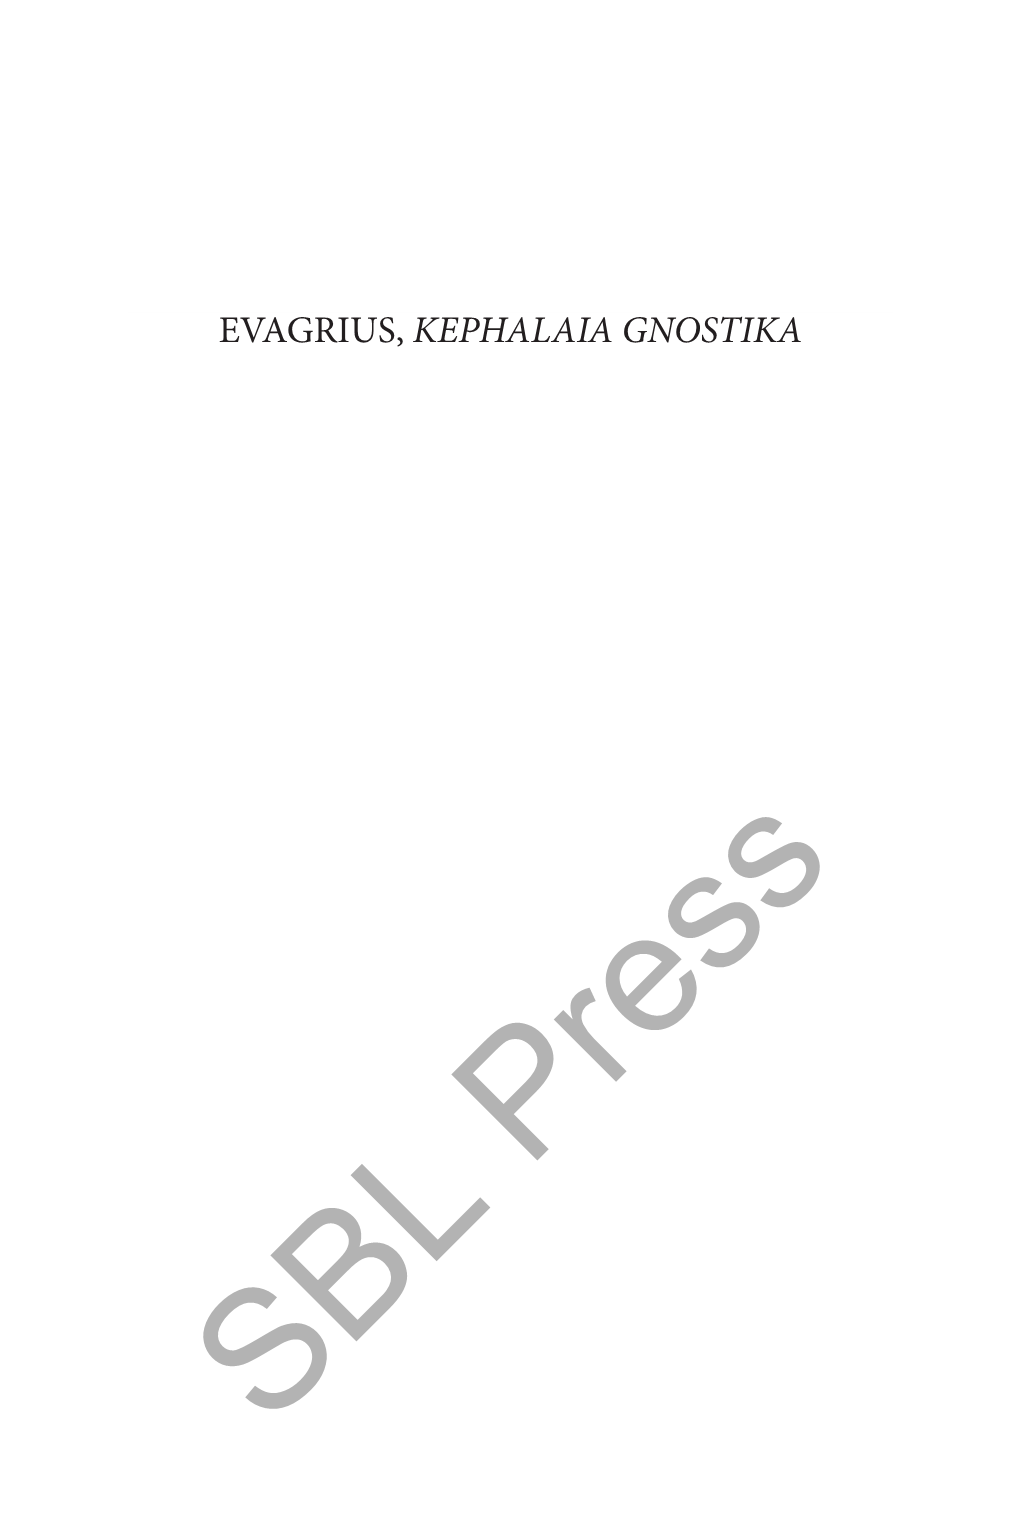 Evagrius, Kephalaia Gnostika